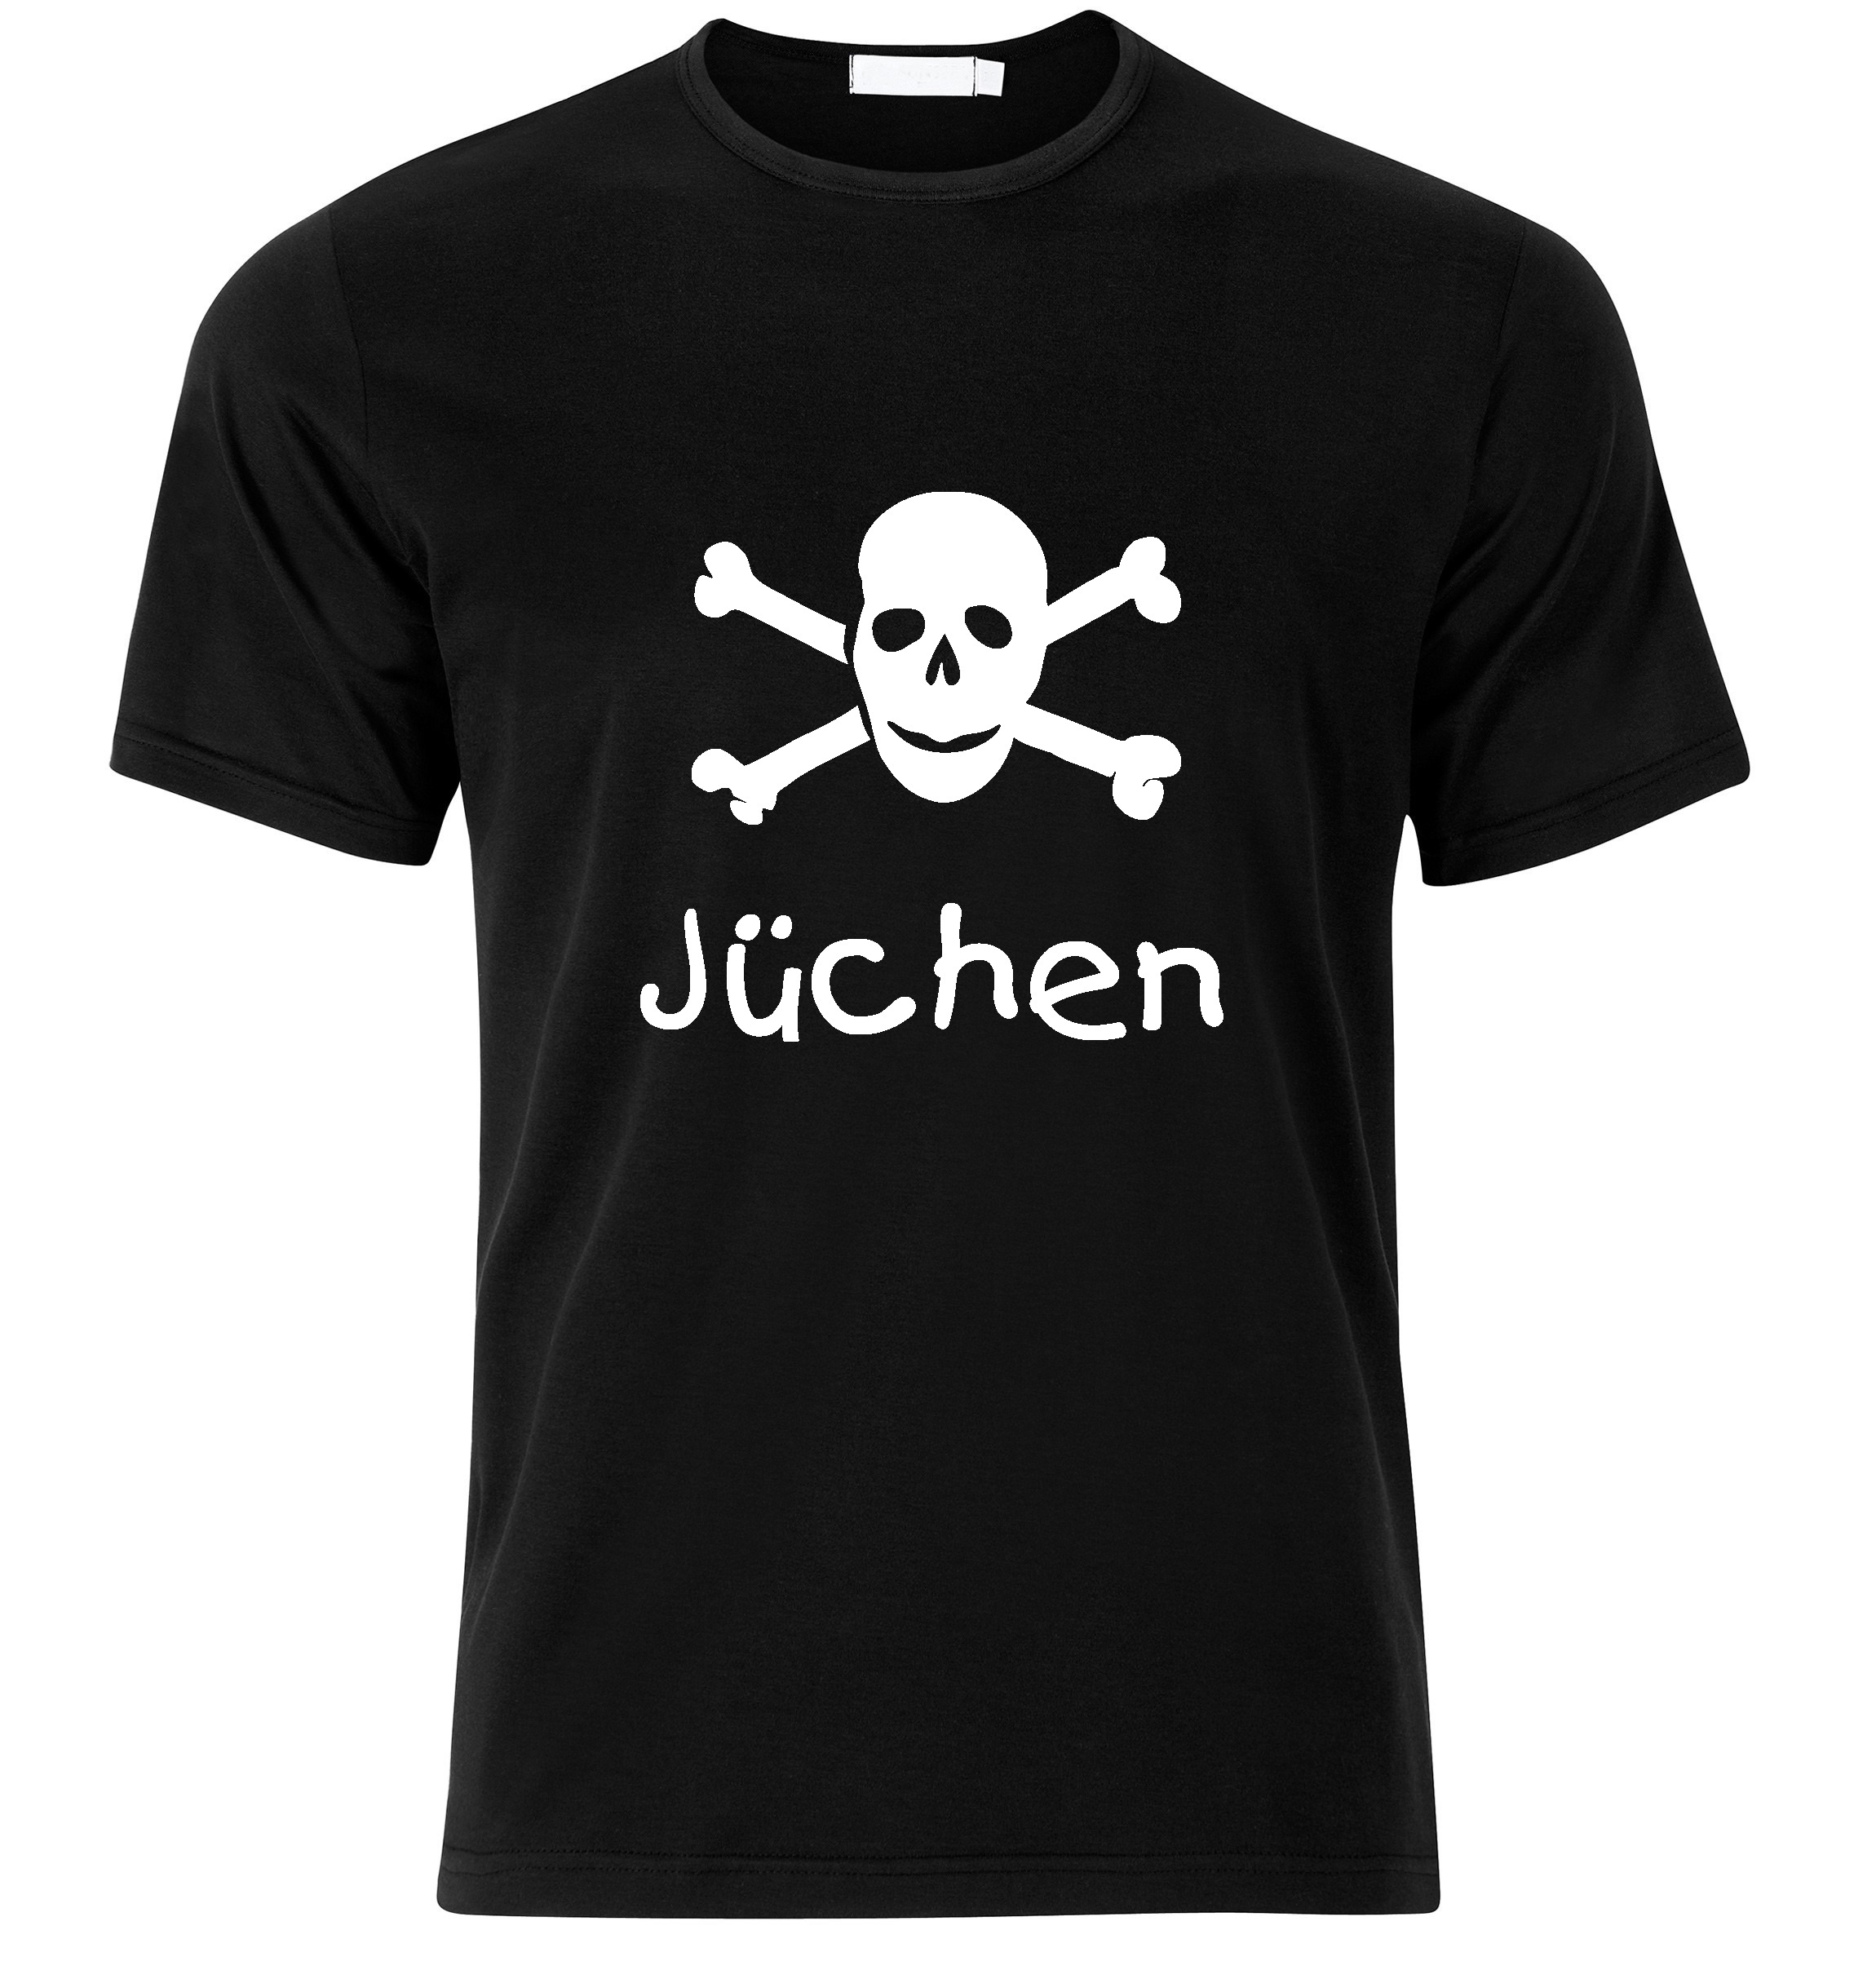 T-Shirt Jüchen Jolly Roger, Totenkopf